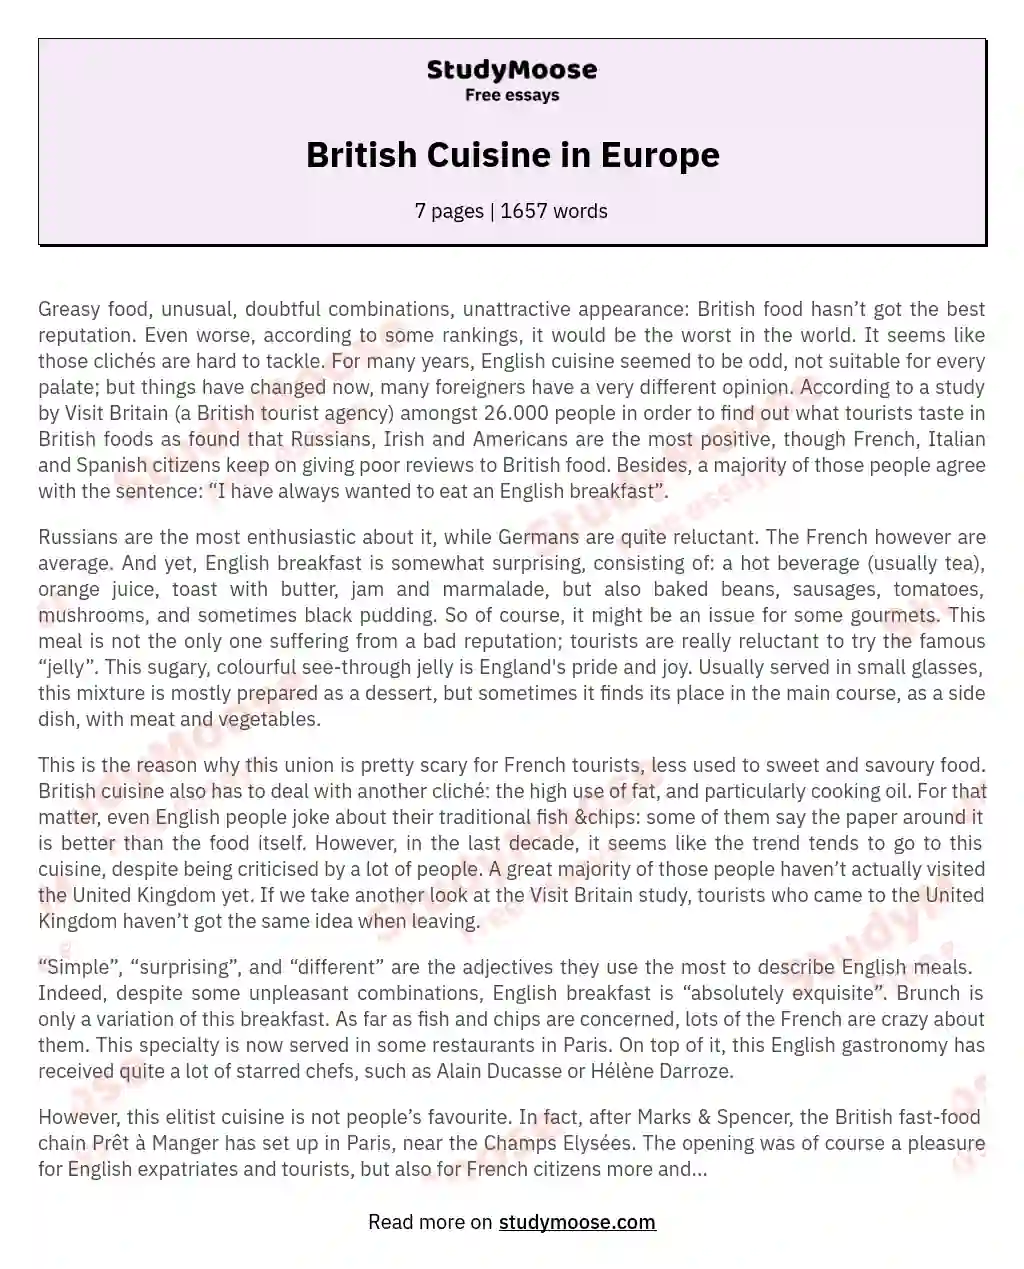 British Cuisine in Europe essay